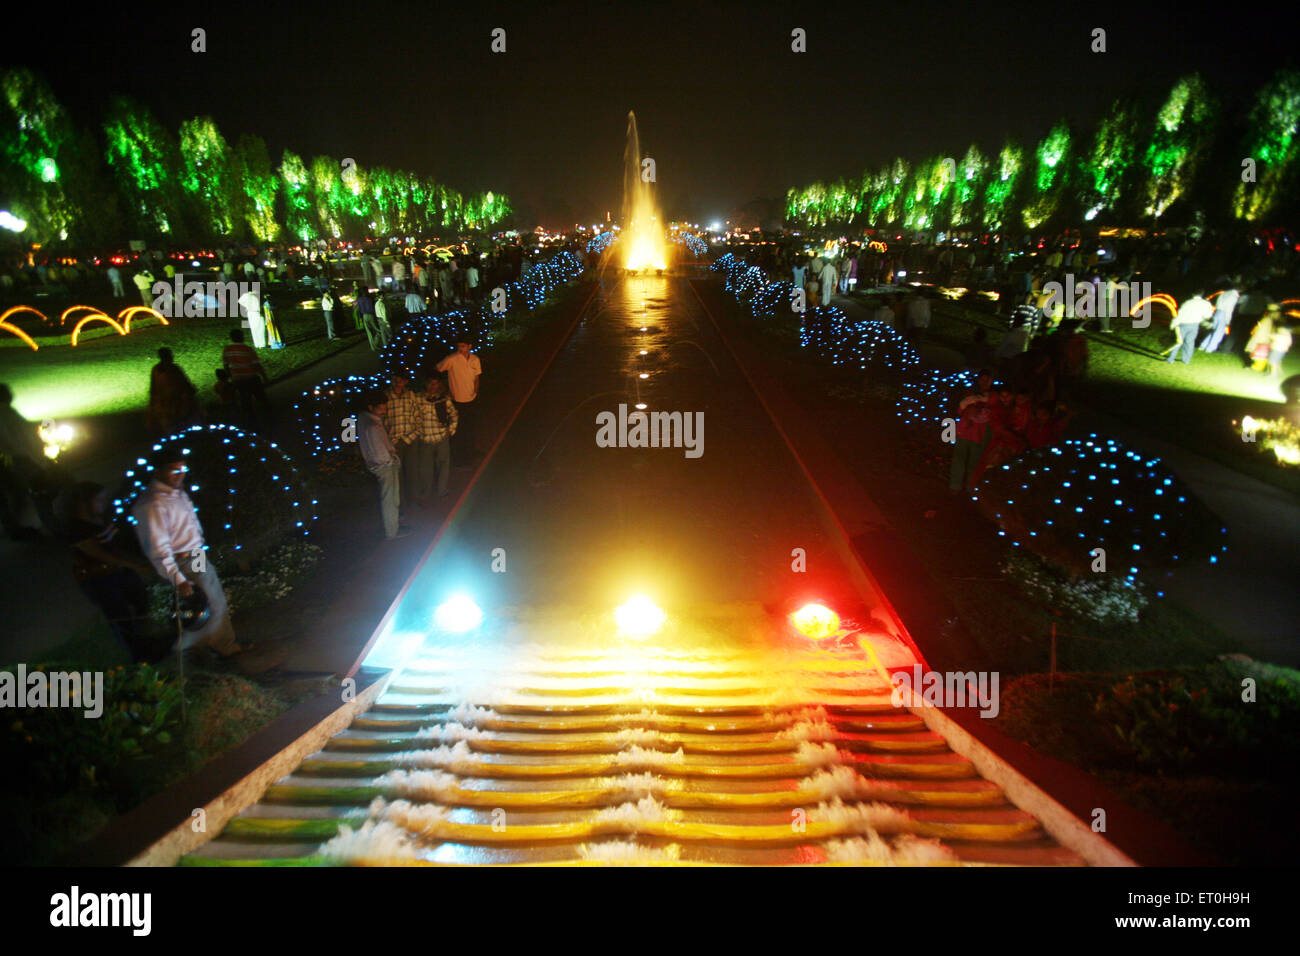 Illuminated garden, Jubilee Park, Tata Steel, Jamshedpur, Tata Nagar, Jharkhand, India, Indian town Stock Photo